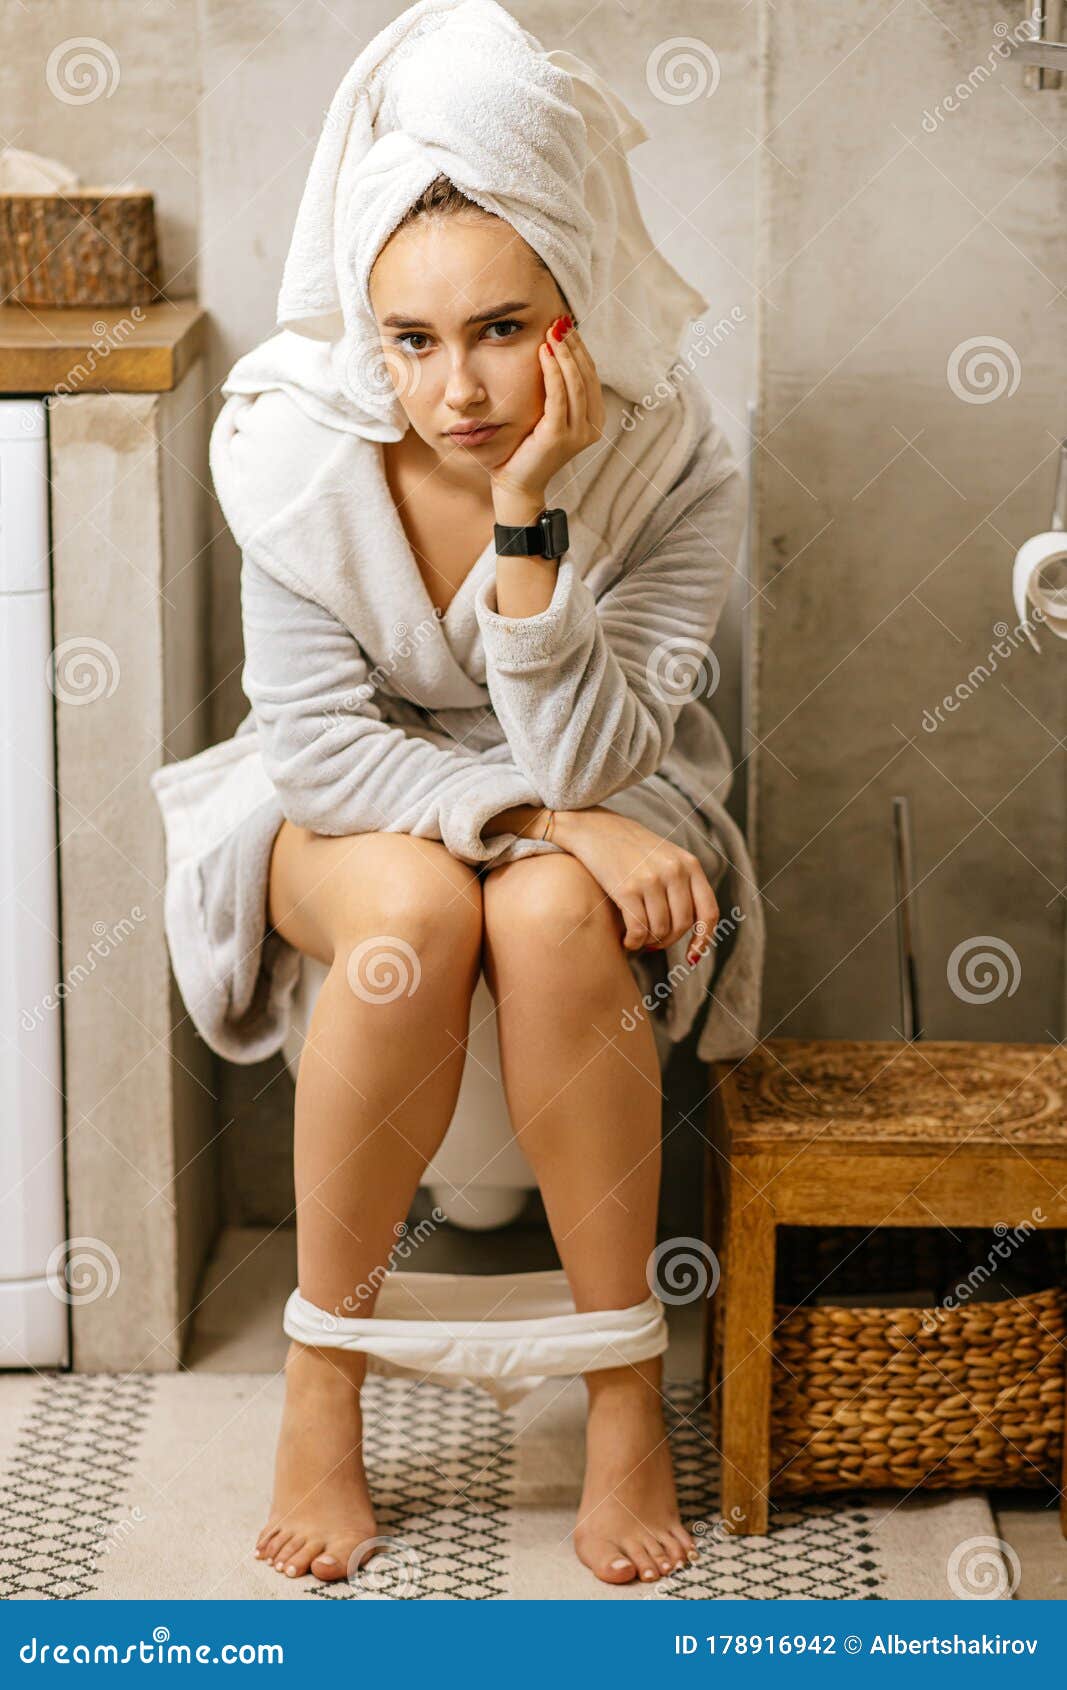 Sexy Woman On Toilet